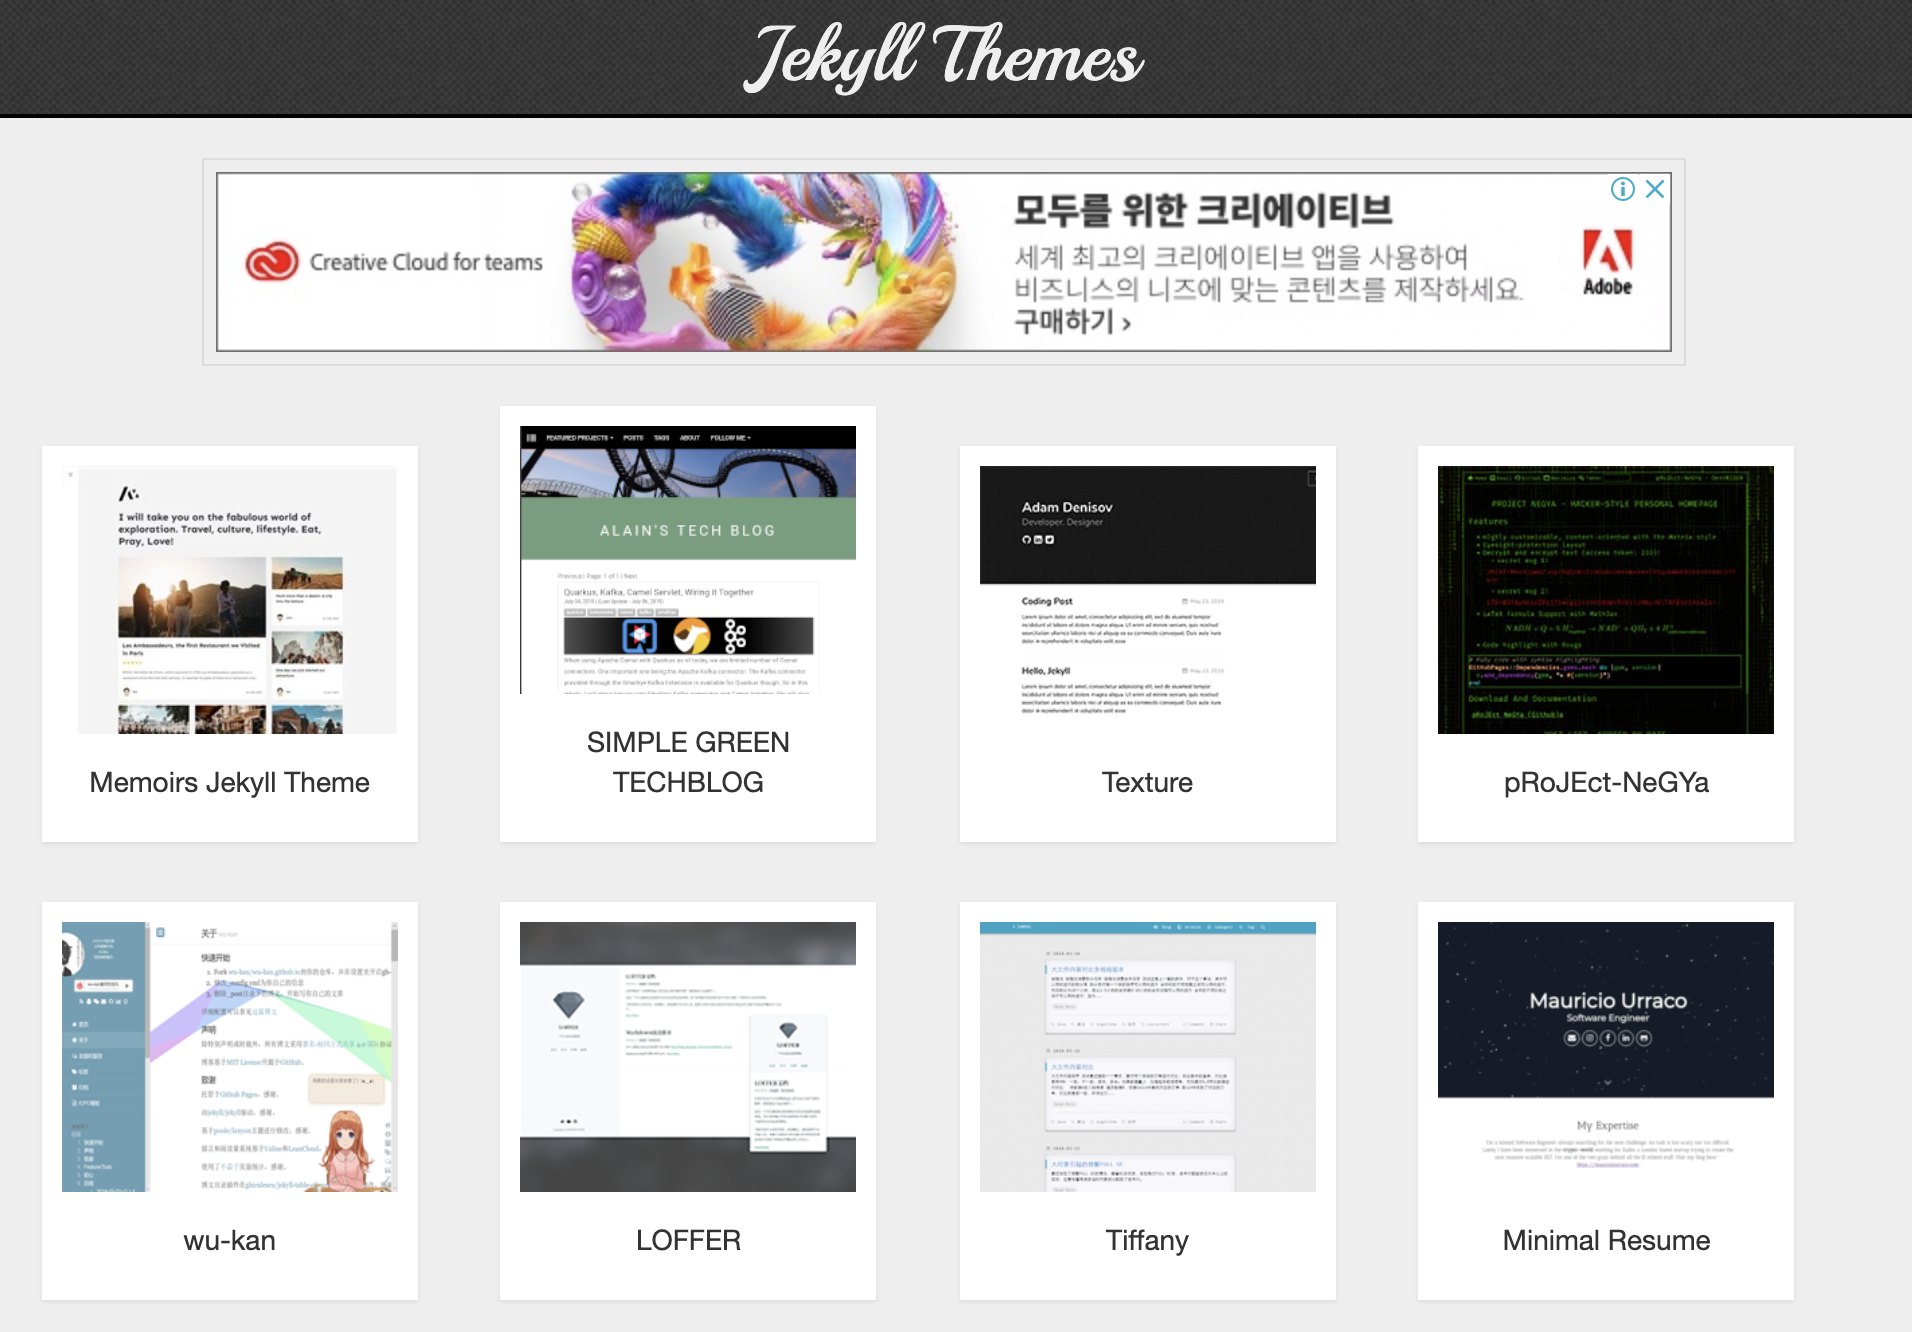 GitHub으로 나만의 블로그 만들기 2 - Jekyll themes를 이용해 블로그 페이지 꾸미기